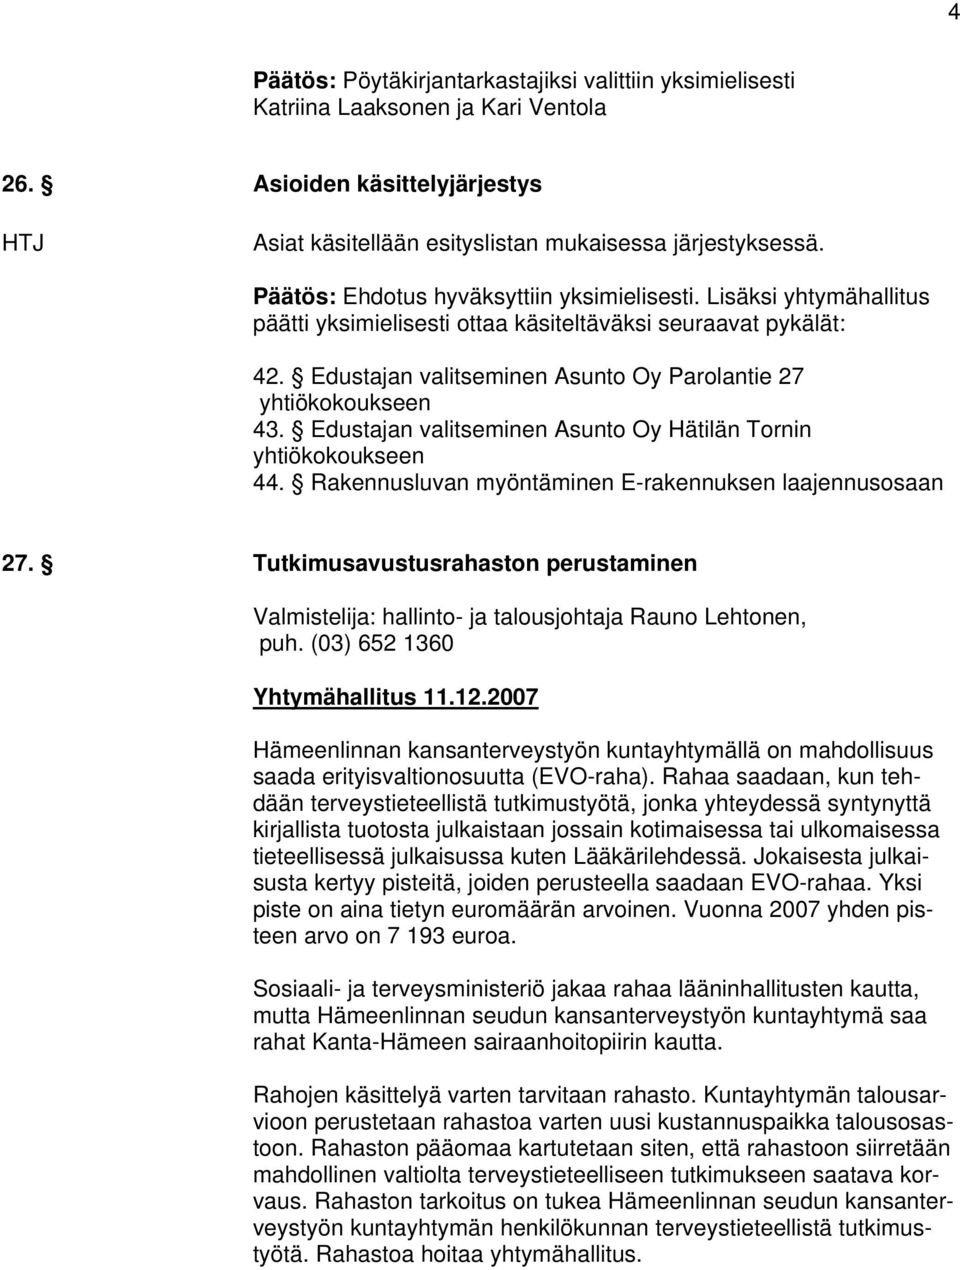 Edustajan valitseminen Asunto Oy Hätilän Tornin yhtiökokoukseen 44. Rakennusluvan myöntäminen E-rakennuksen laajennusosaan 27.